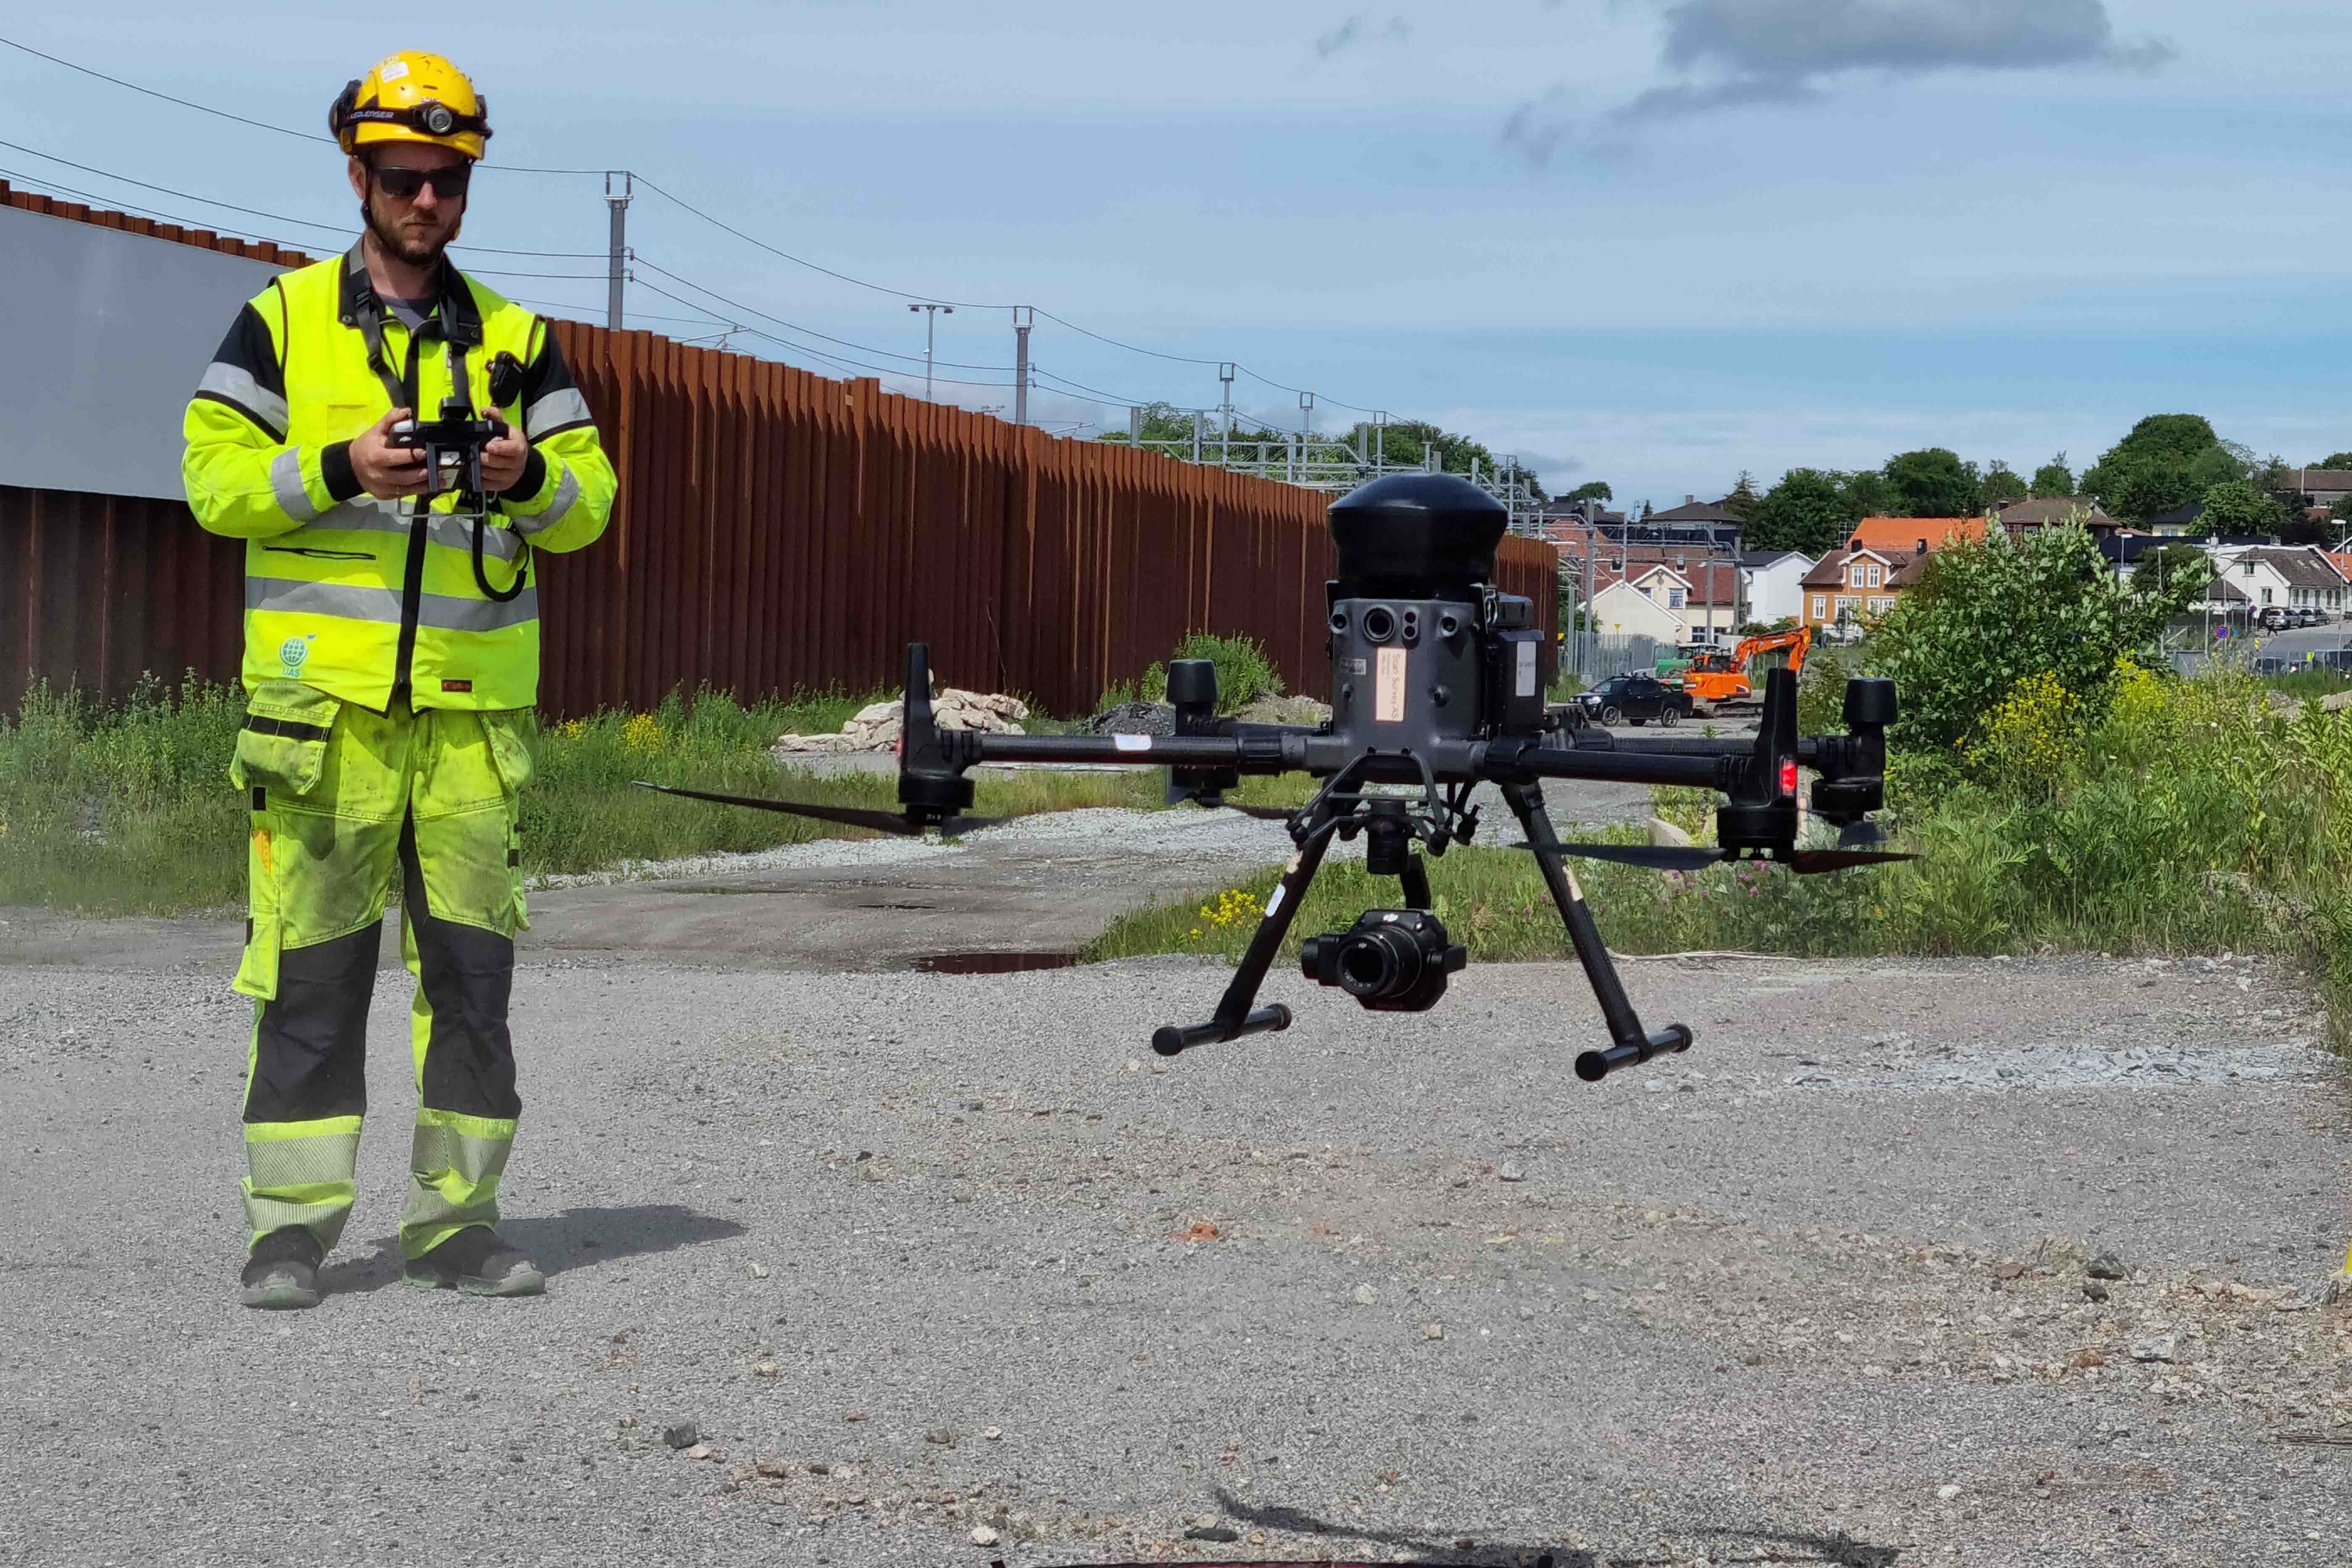 En av pilotene som flyr drone for prosjektet er Anthony Kobrowisky i Scan Survey. Her letter dronen fra anleggsområdet ved spuntveggen ved Moss havn. Foto: Karoline Vårdal, Bane NOR

